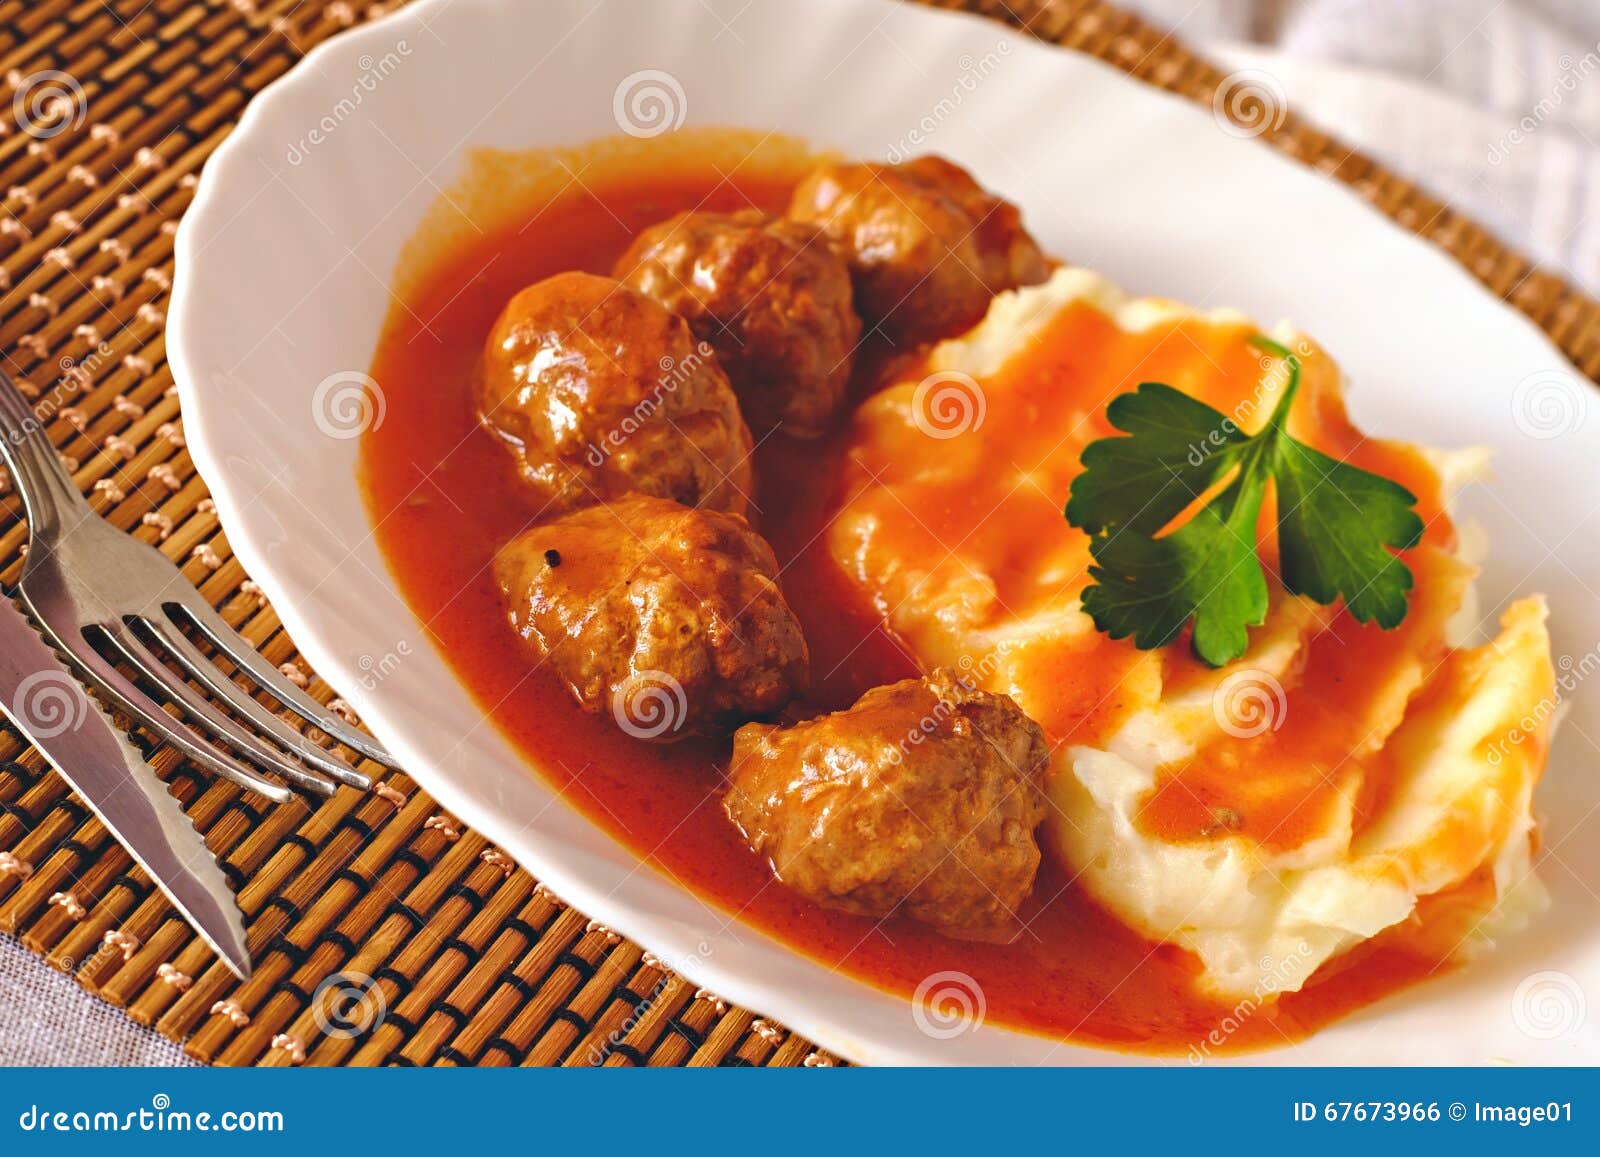 Fleischklöschen In Der Tomatensauce Mit Kartoffelpüree Stockfoto - Bild ...